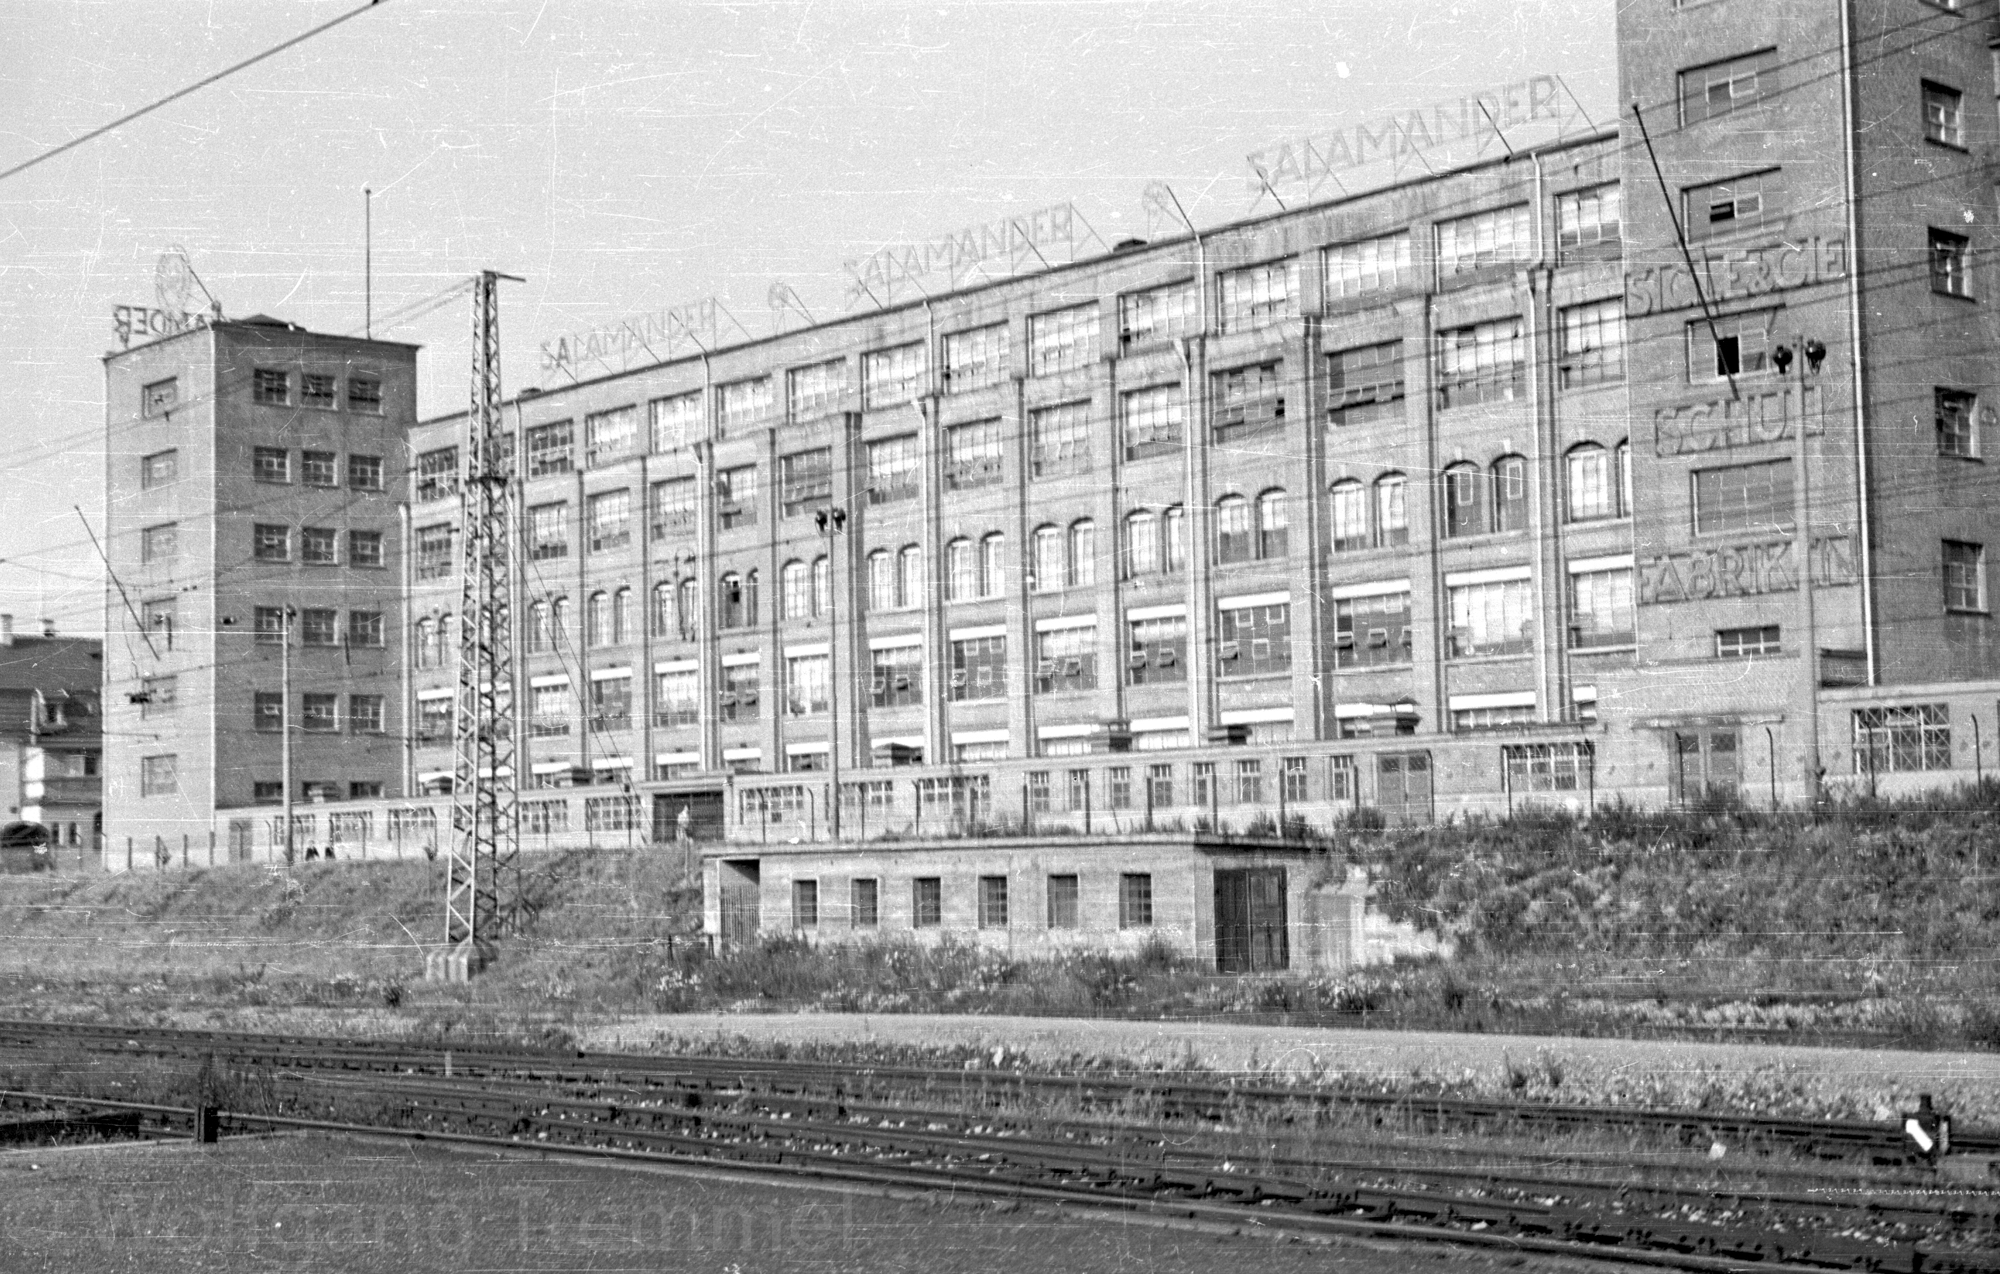 1951: Fabrikgebäude von Salamander